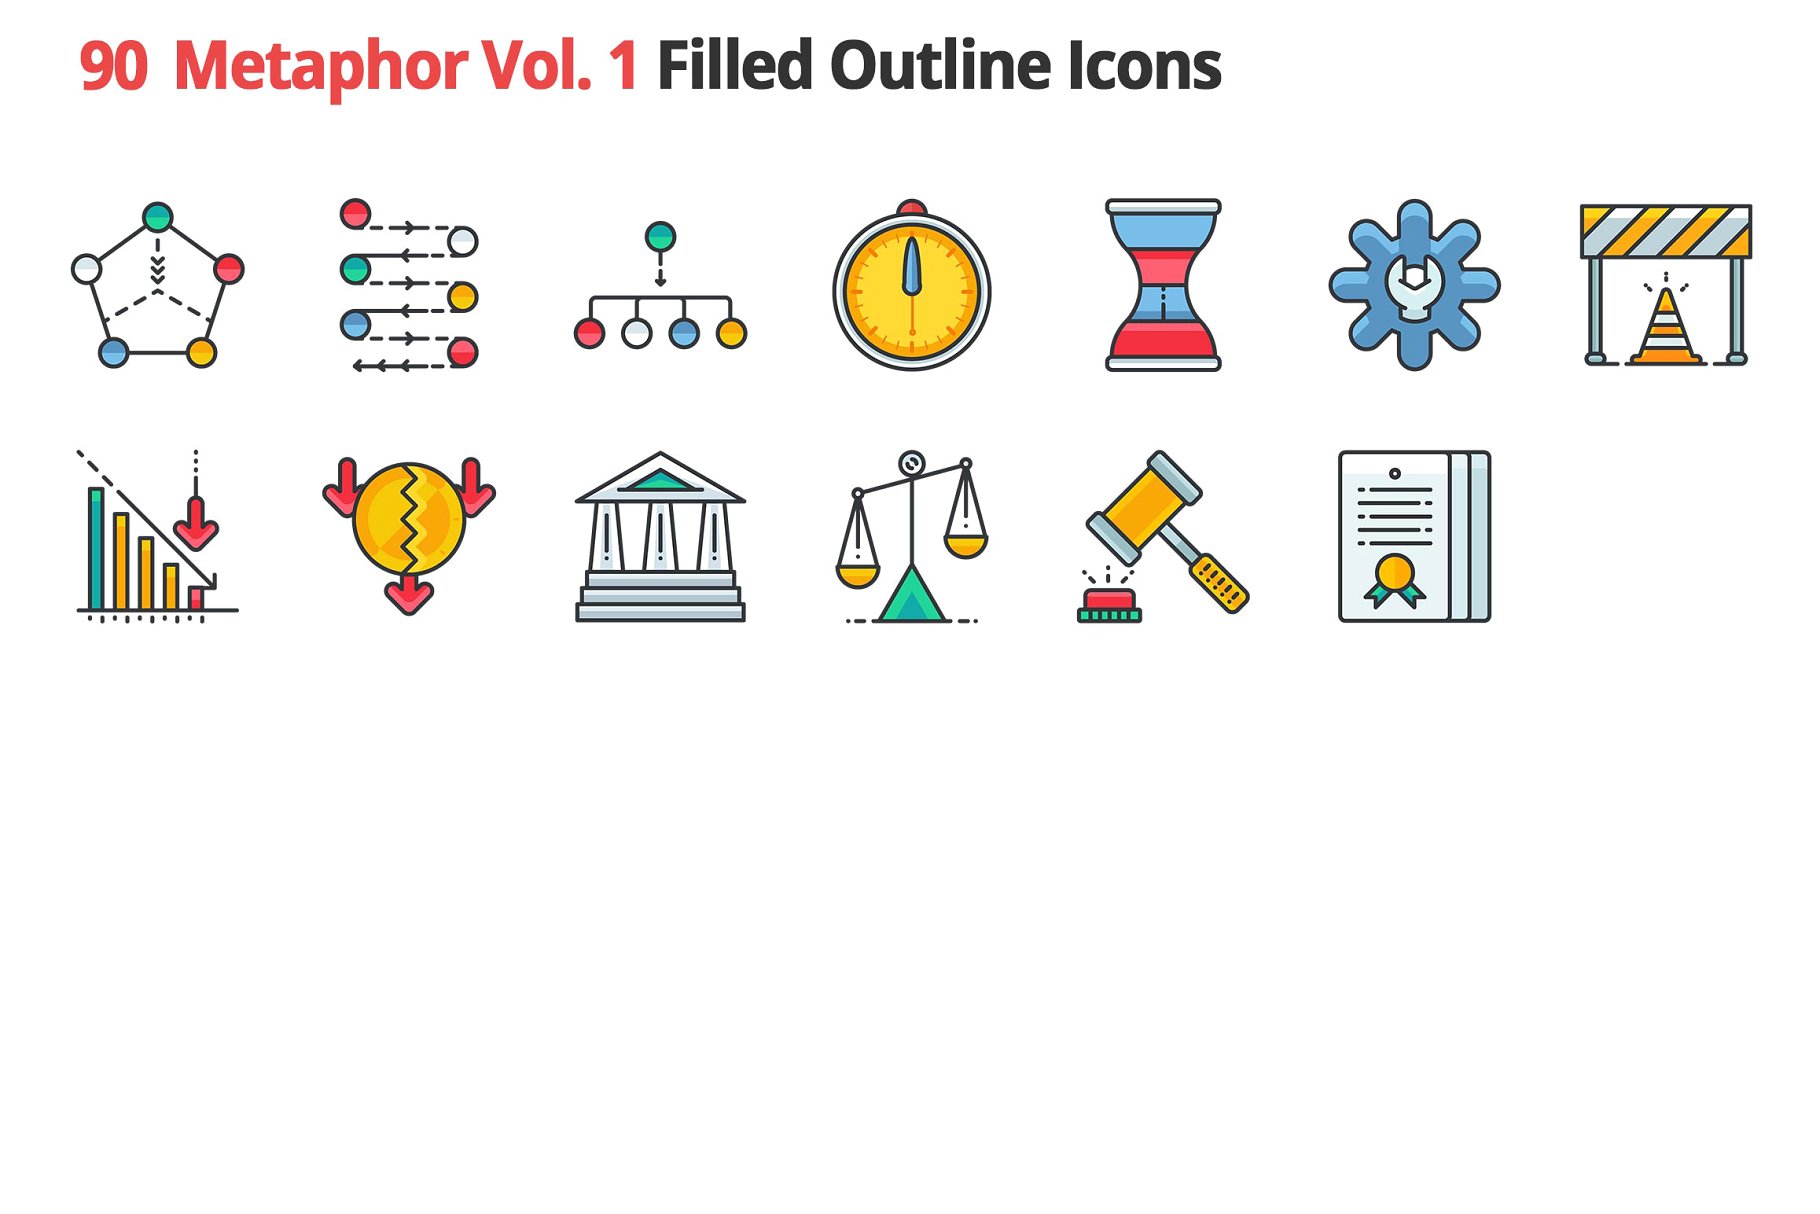 90个哲学主题隐喻填充小图标素材 90 Metaphors Vol. 1 Filled Icons插图(3)